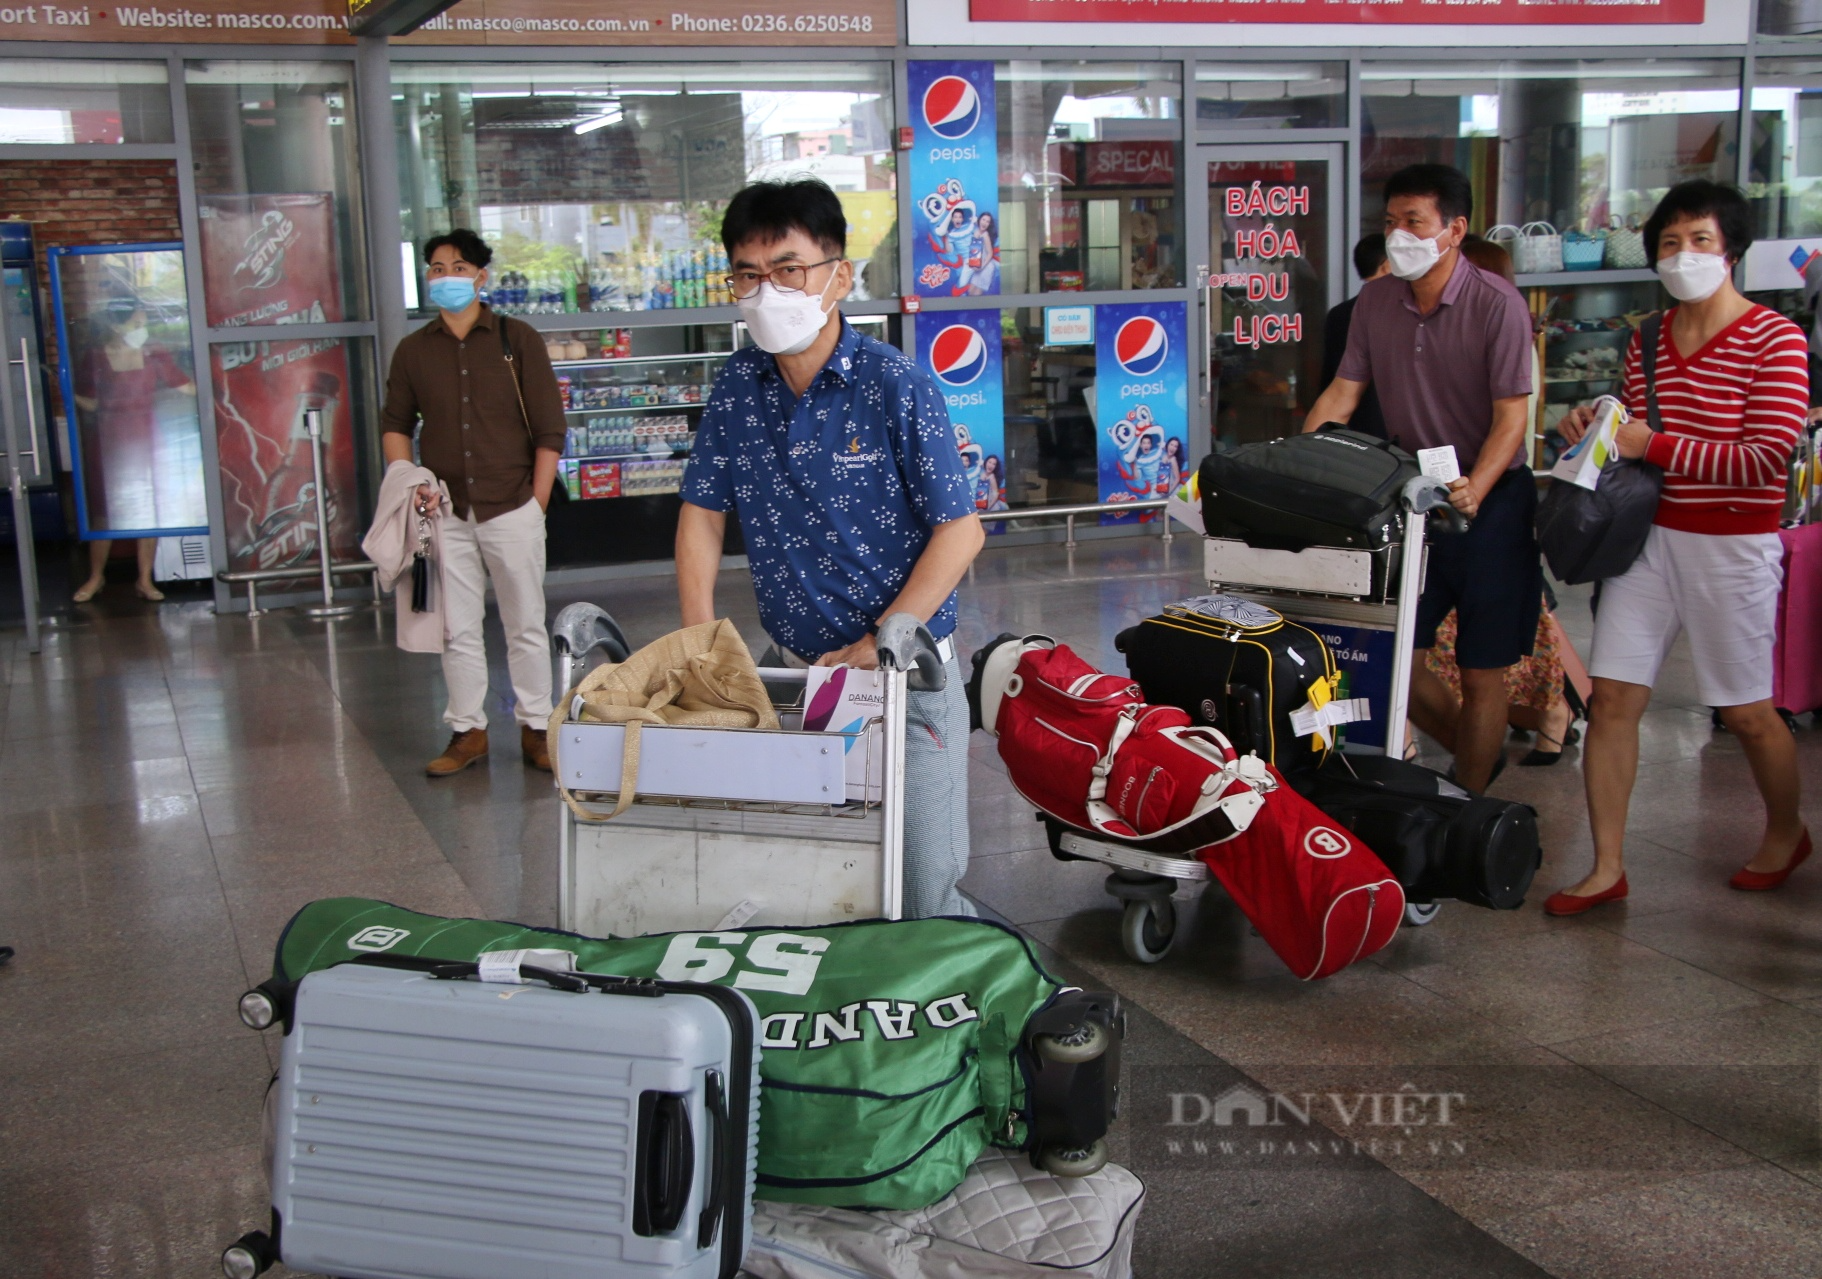 Du khách chỉ mất 2 phút để làm thủ tục chuyến bay tại Đà Nẵng - Ảnh 8.